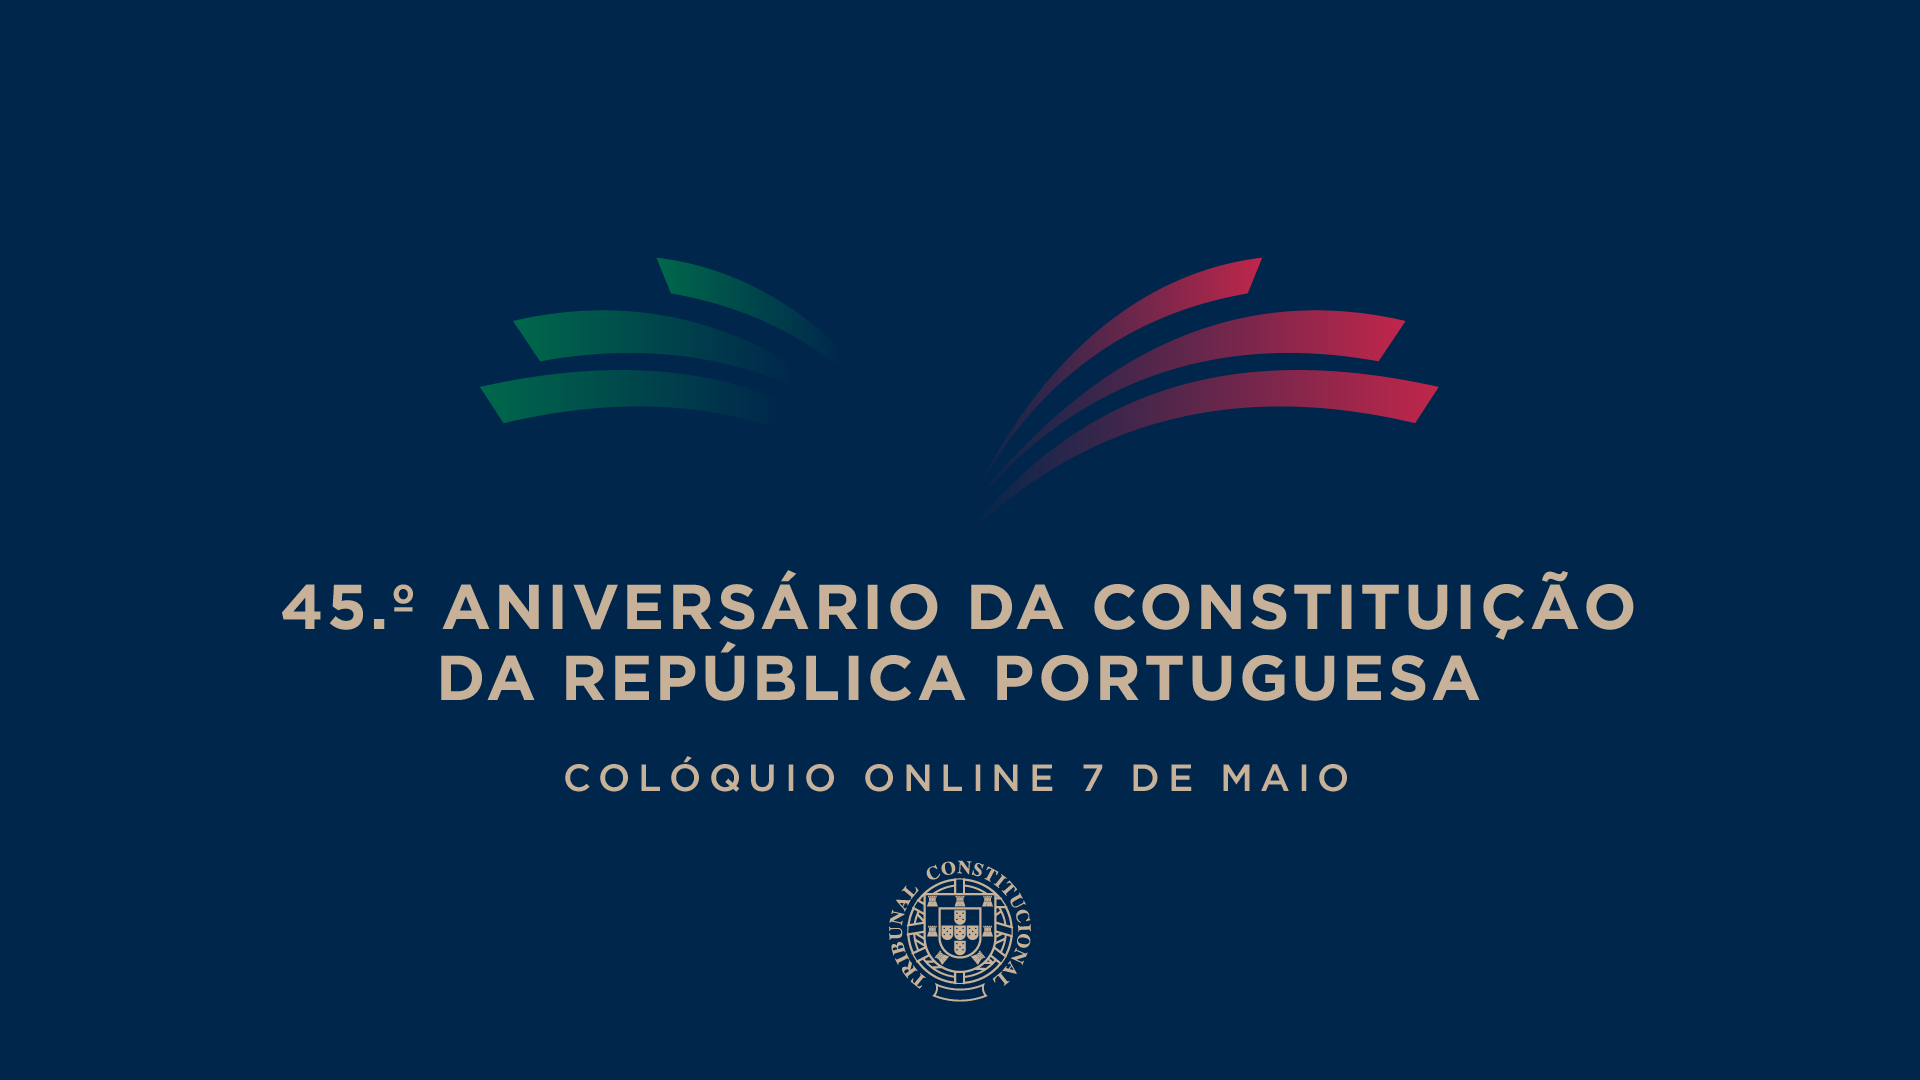 Colóquio Comemorativo do 45.º Aniversário da Constituição da República Portuguesa 